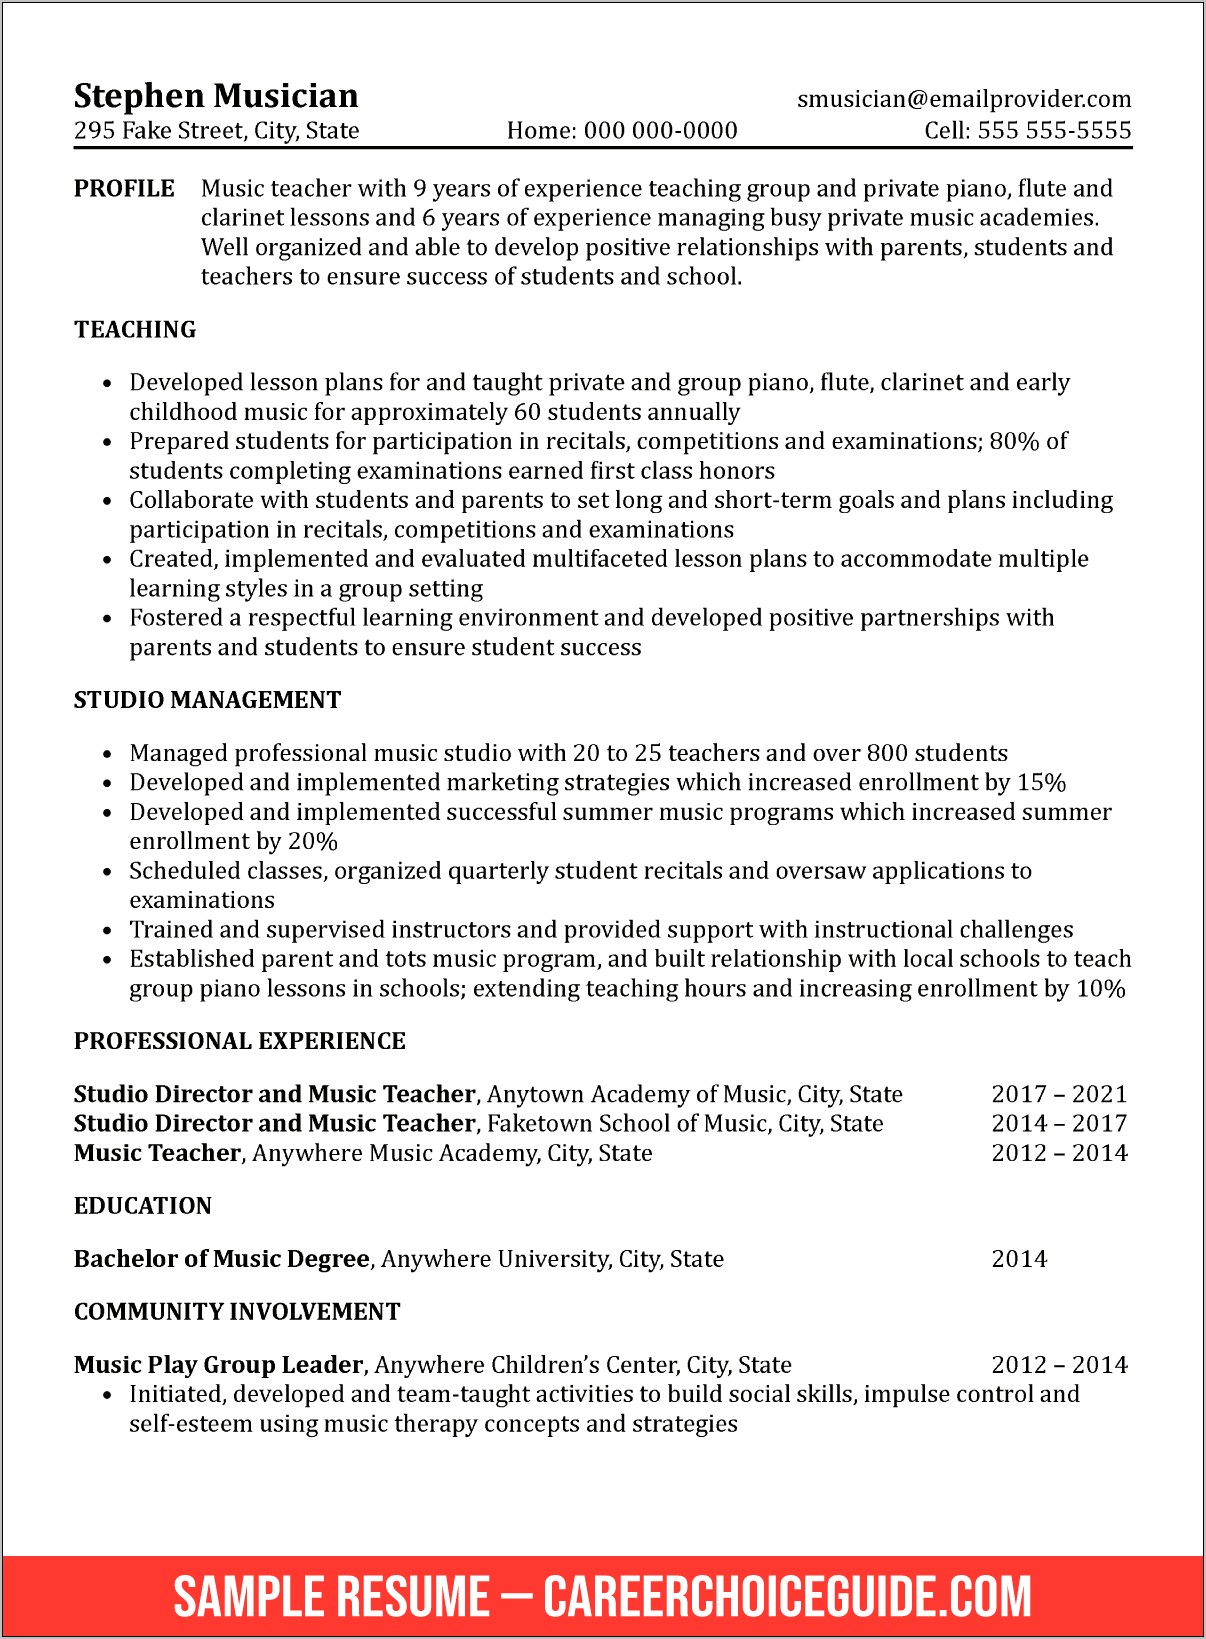 Sample Resume For Teacher Application